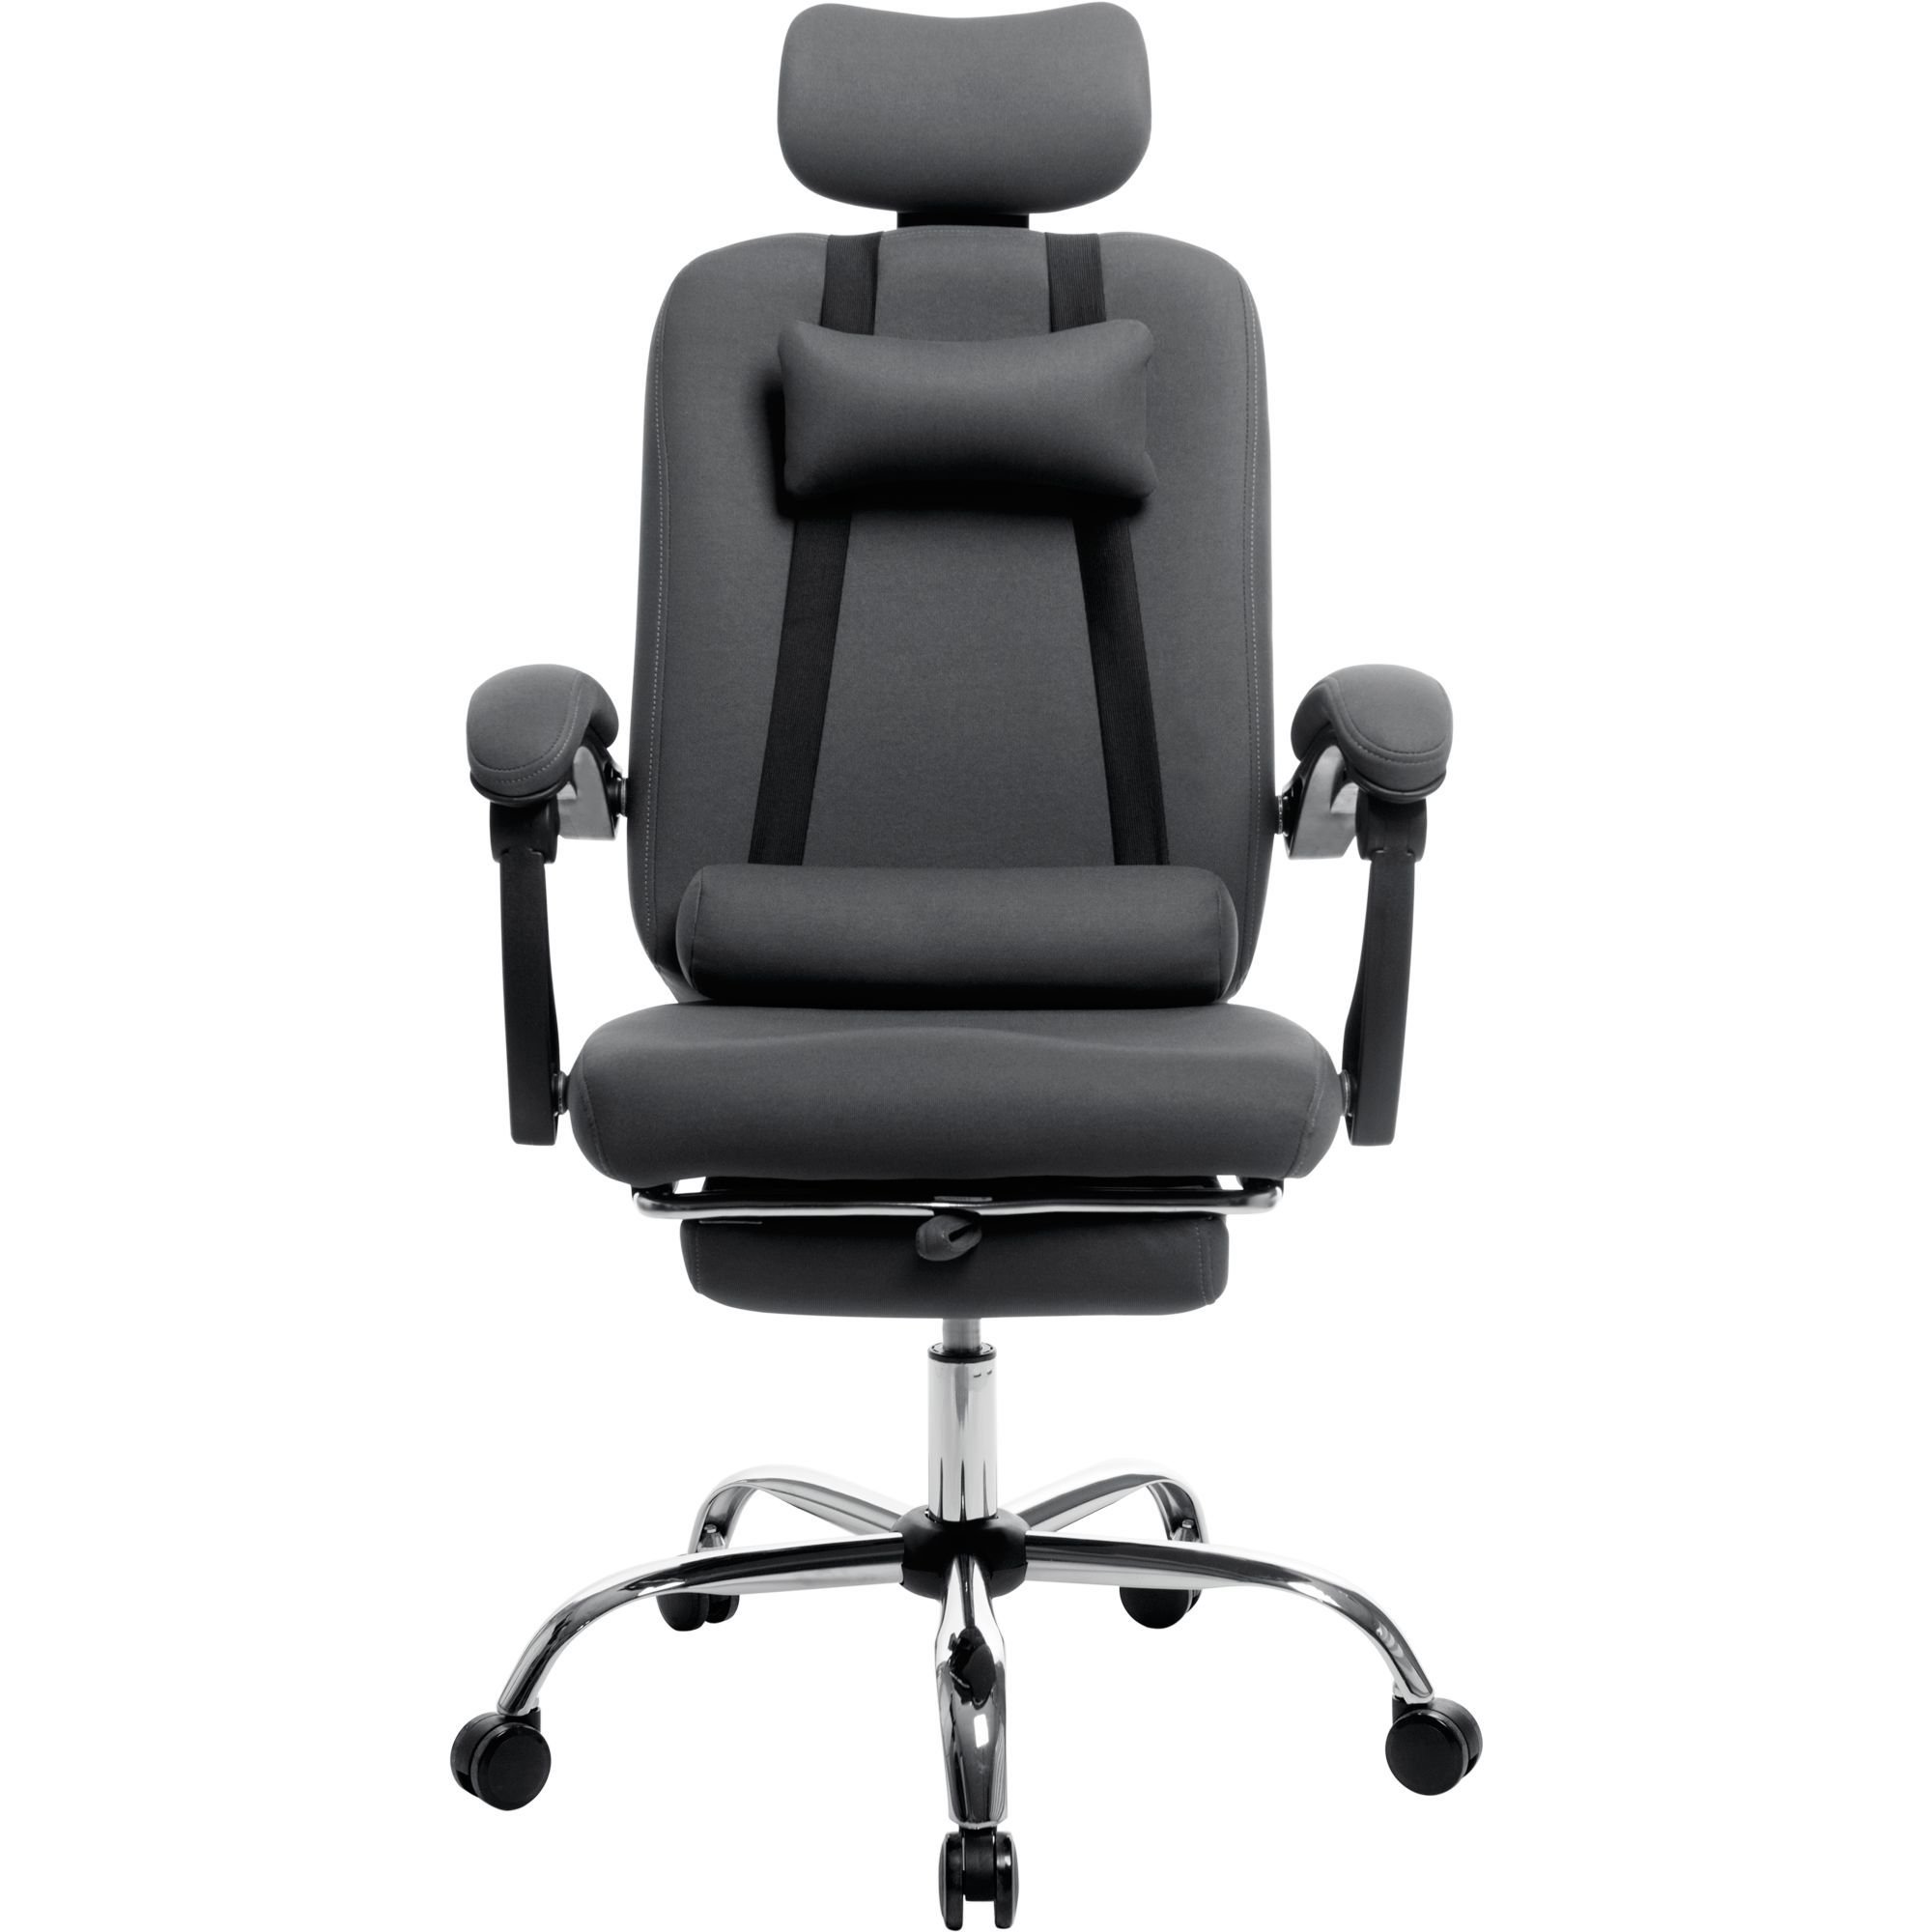 Офисное кресло GT Racer X-8003 Fabric, серое (X-8003 Gray) - фото 2